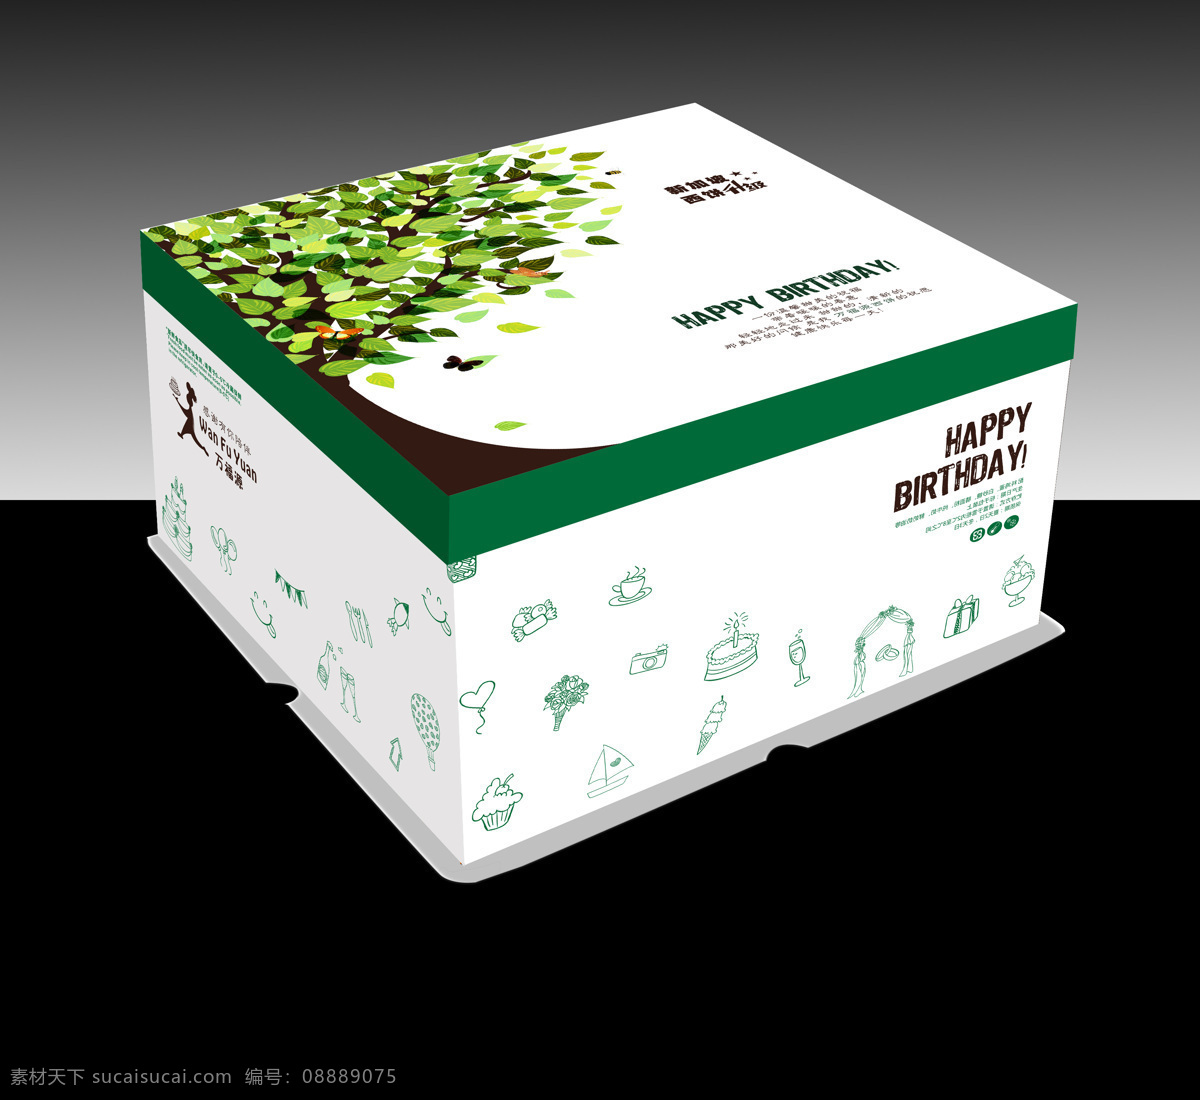 绿色 树叶 蛋糕盒 包装 包装设计